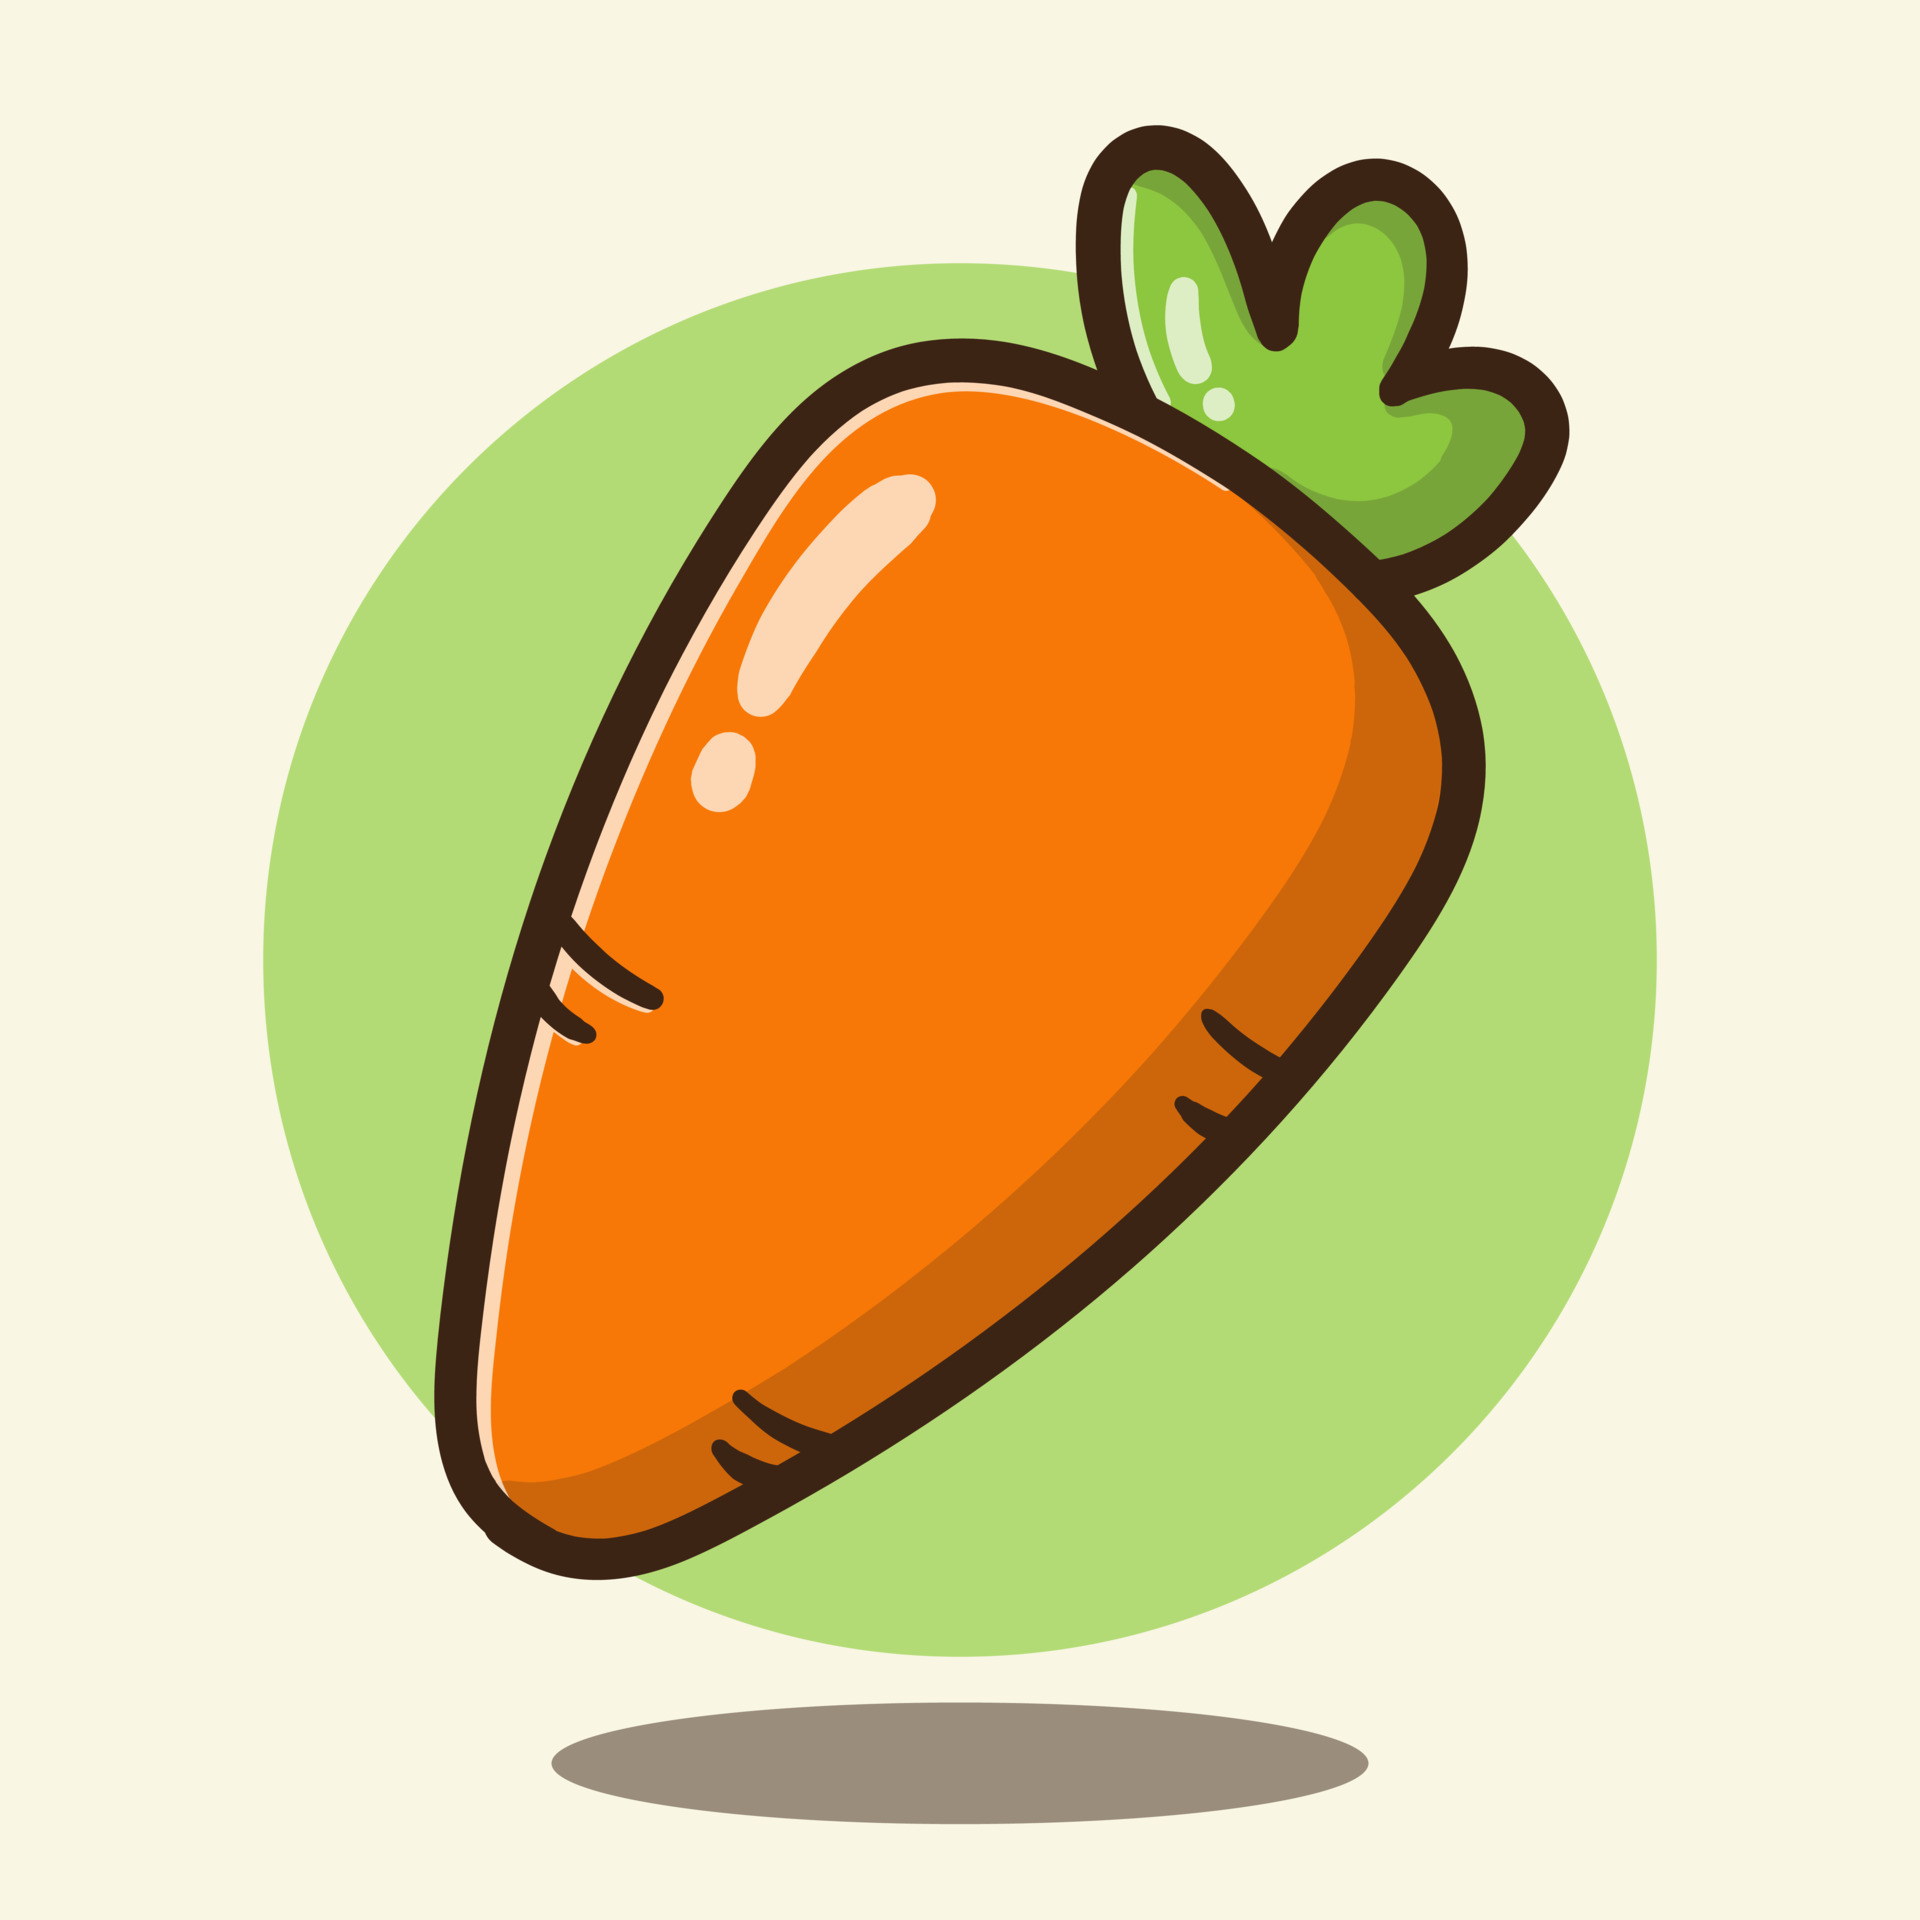 cartoon carrots